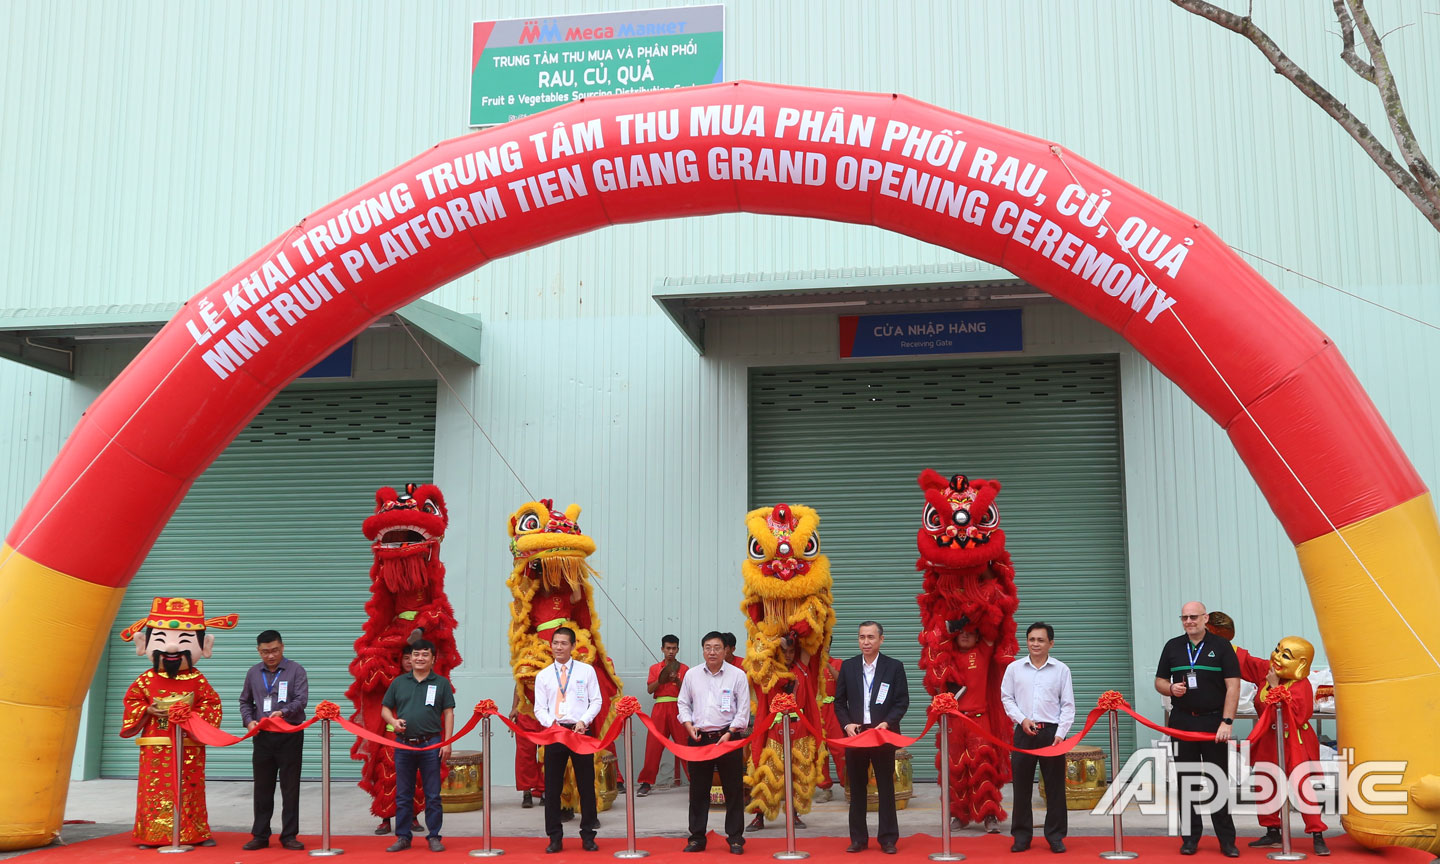 Công ty TNHH MM Mega Market Việt Nam khai trương Trung tâm Thu mua phân phối rau, củ, quả tại Khu công nghiệp Mỹ Tho.